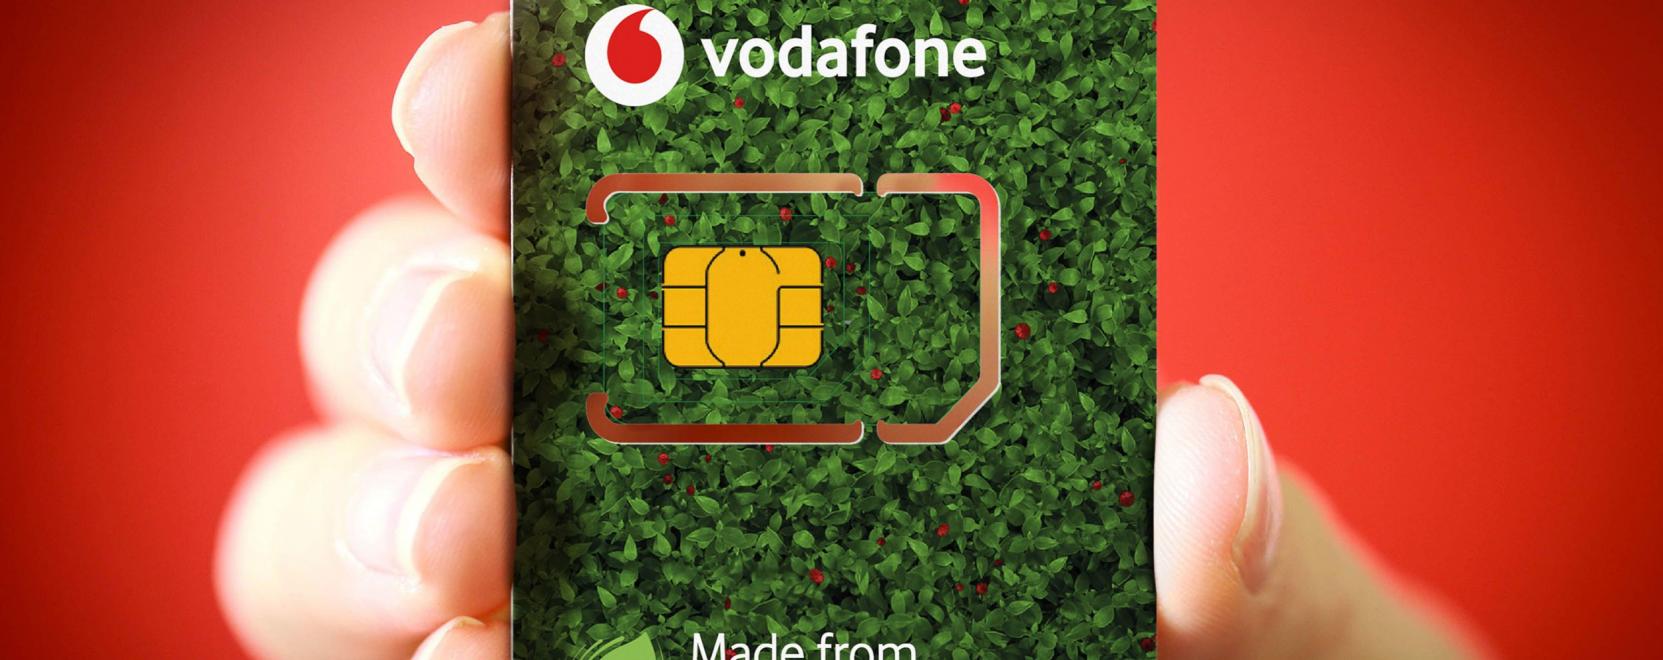 Újabb környezettudatos SIM-kártyát vezet be a Vodafone